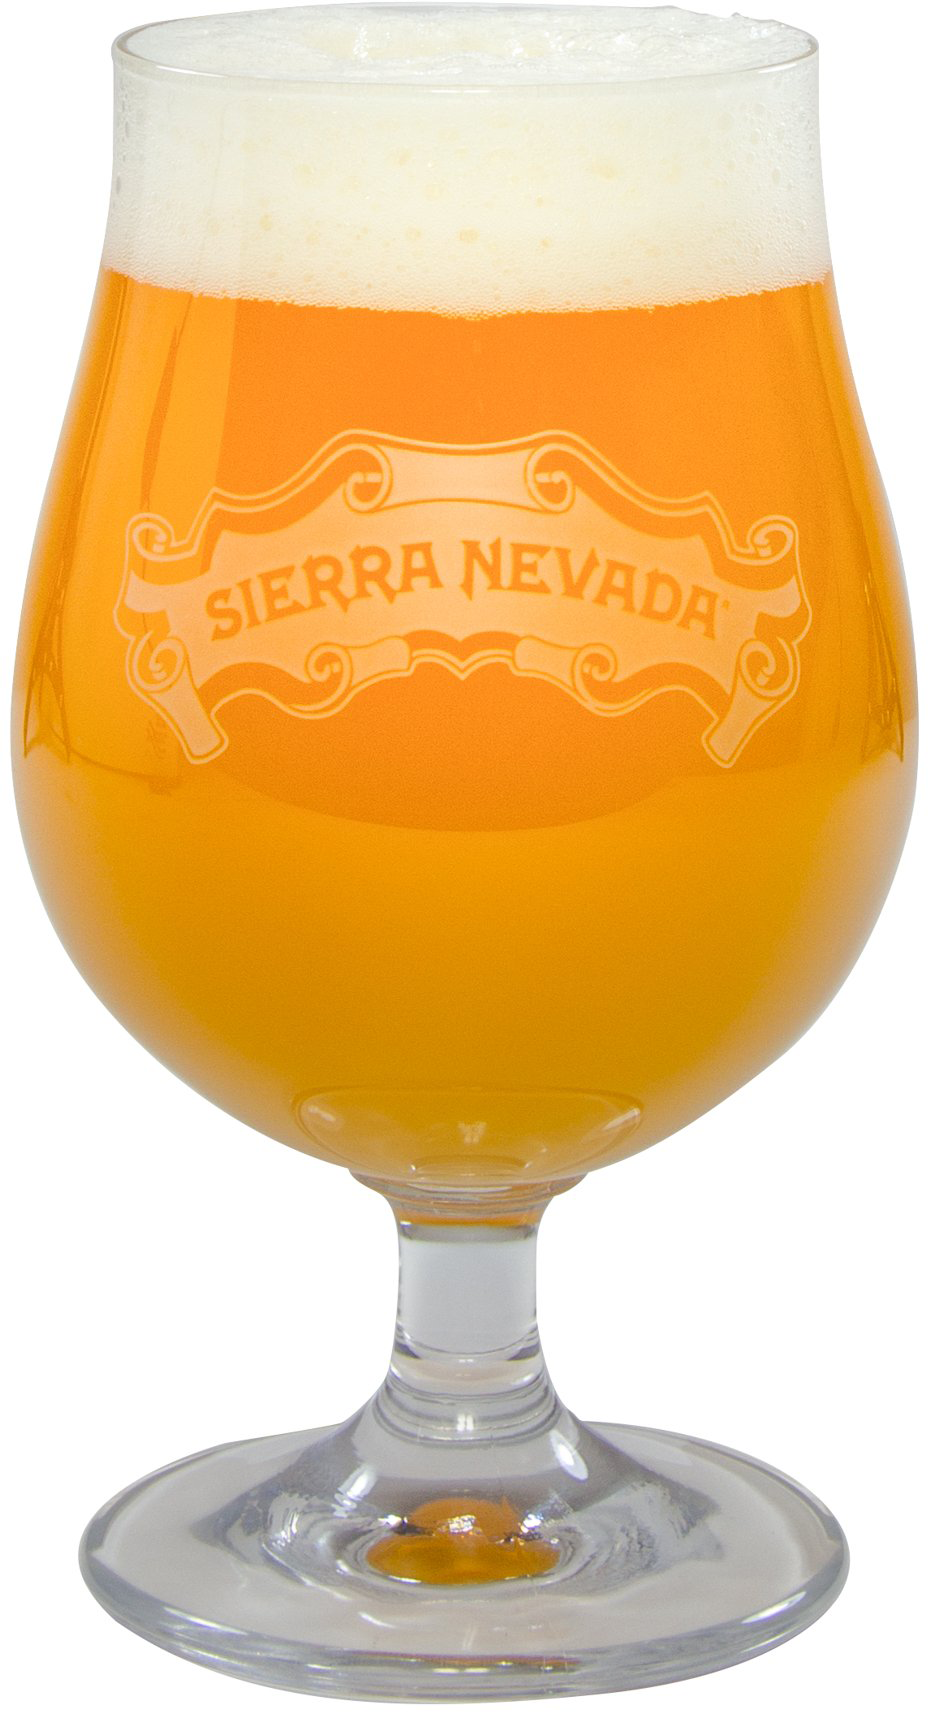 Sierra Nevada Luettich Balloon Glass